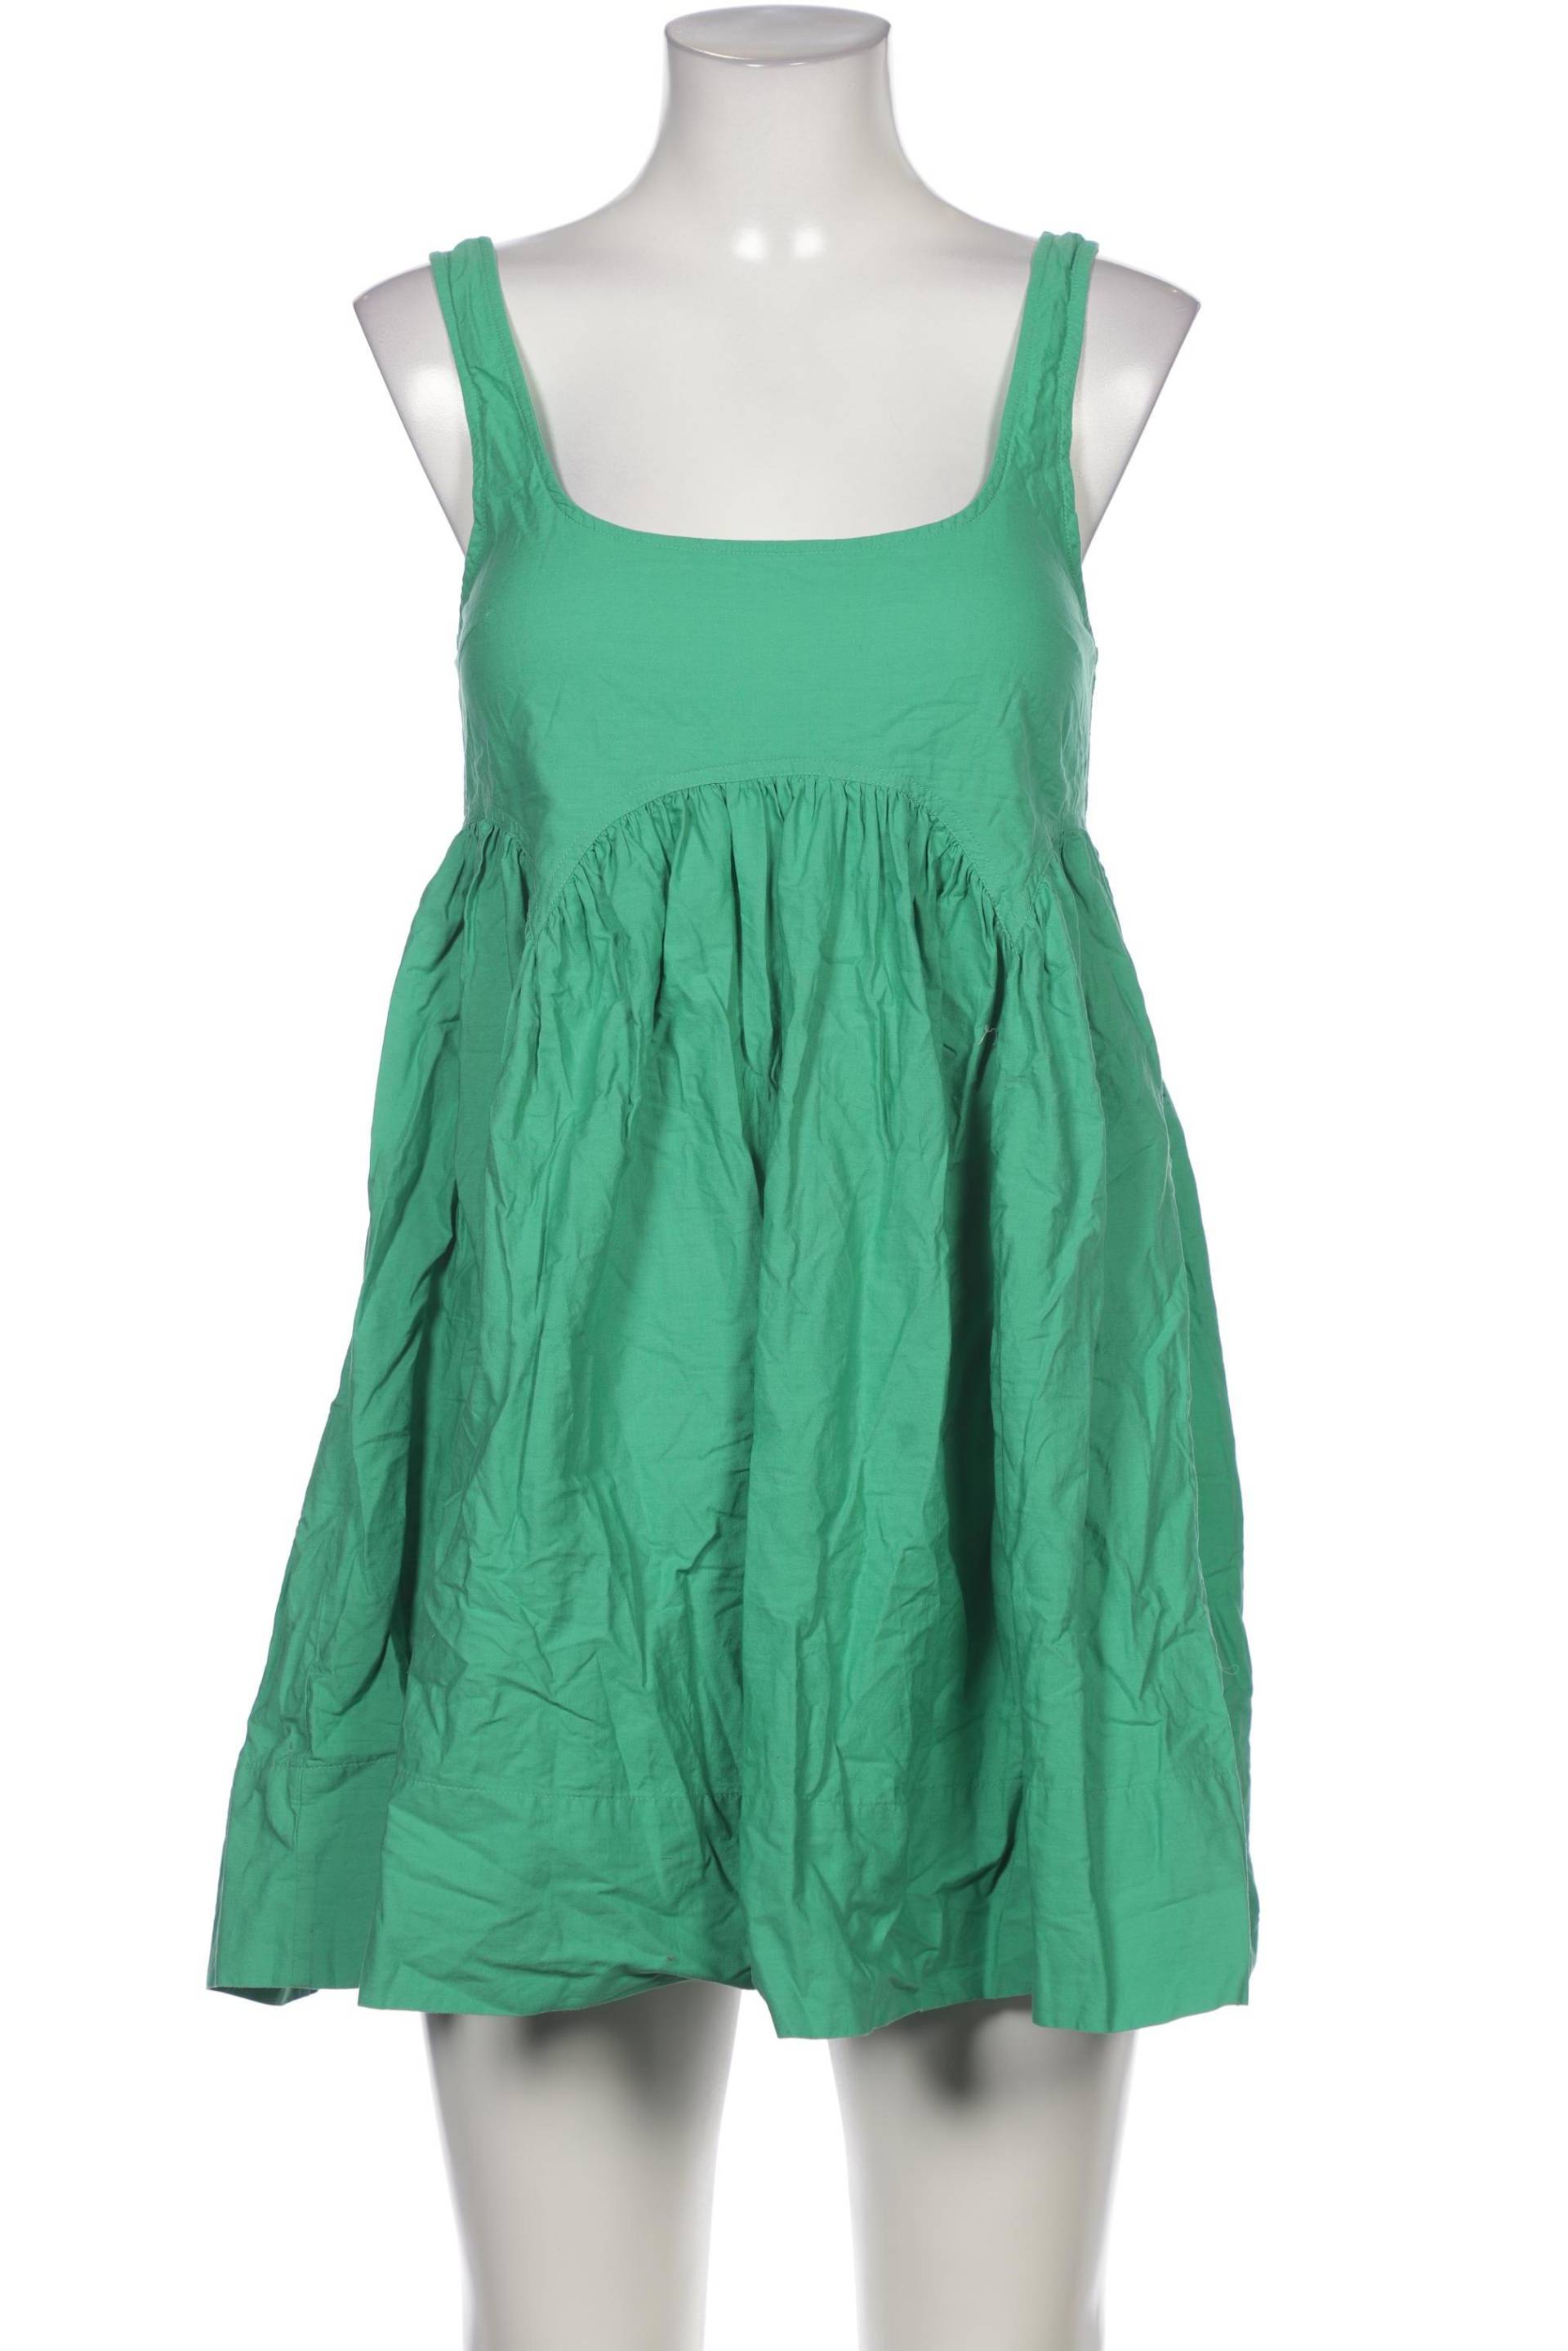 asos Damen Kleid, grün, Gr. 36 von asos